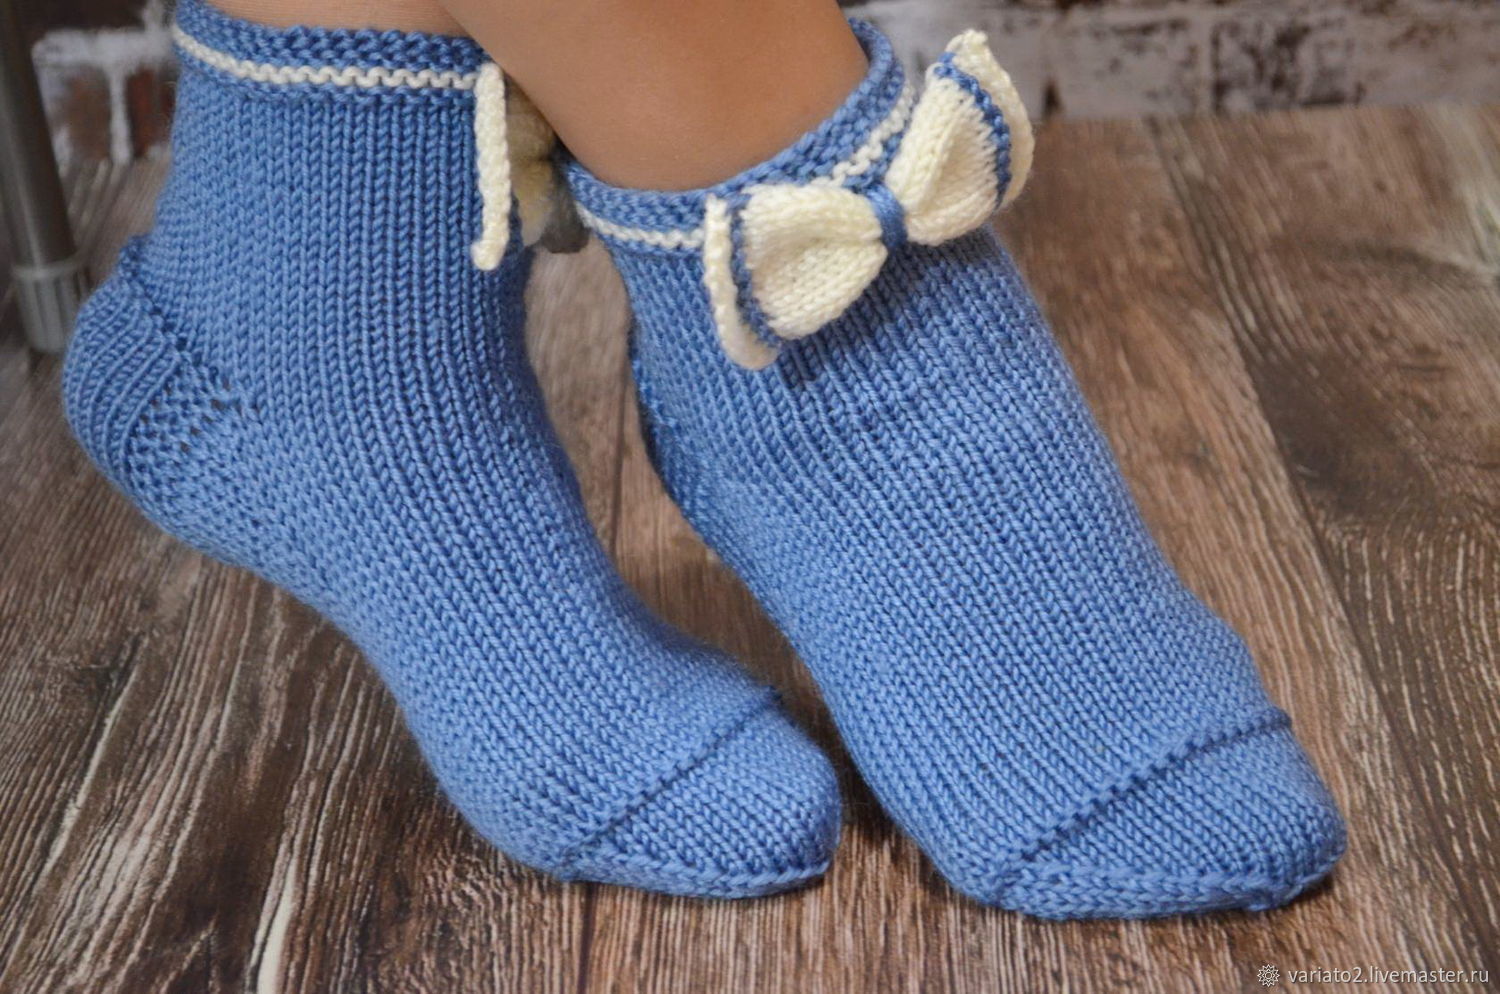 Детские ножки необходимо держать в тепле Поэтому мы предлагаем вам научиться вязать спицами носочки для малышей по примеру мастер-класса и видео уроков